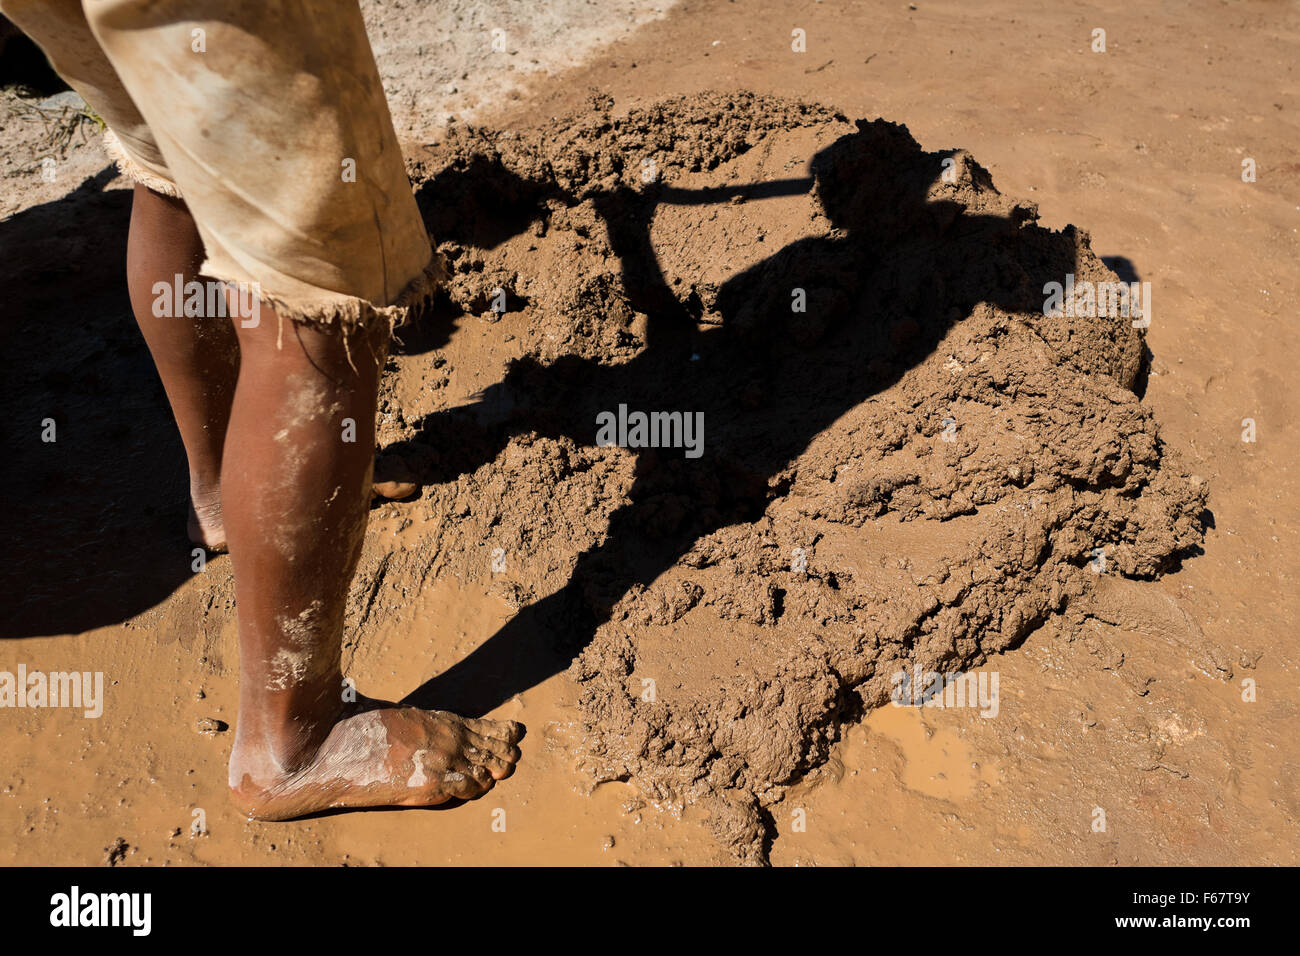 Moisés, une à l'âge de 13 ans, garçon salvadorienne, pelles de l'argile humide à une briqueterie dans Istahua, El Salvador. Banque D'Images